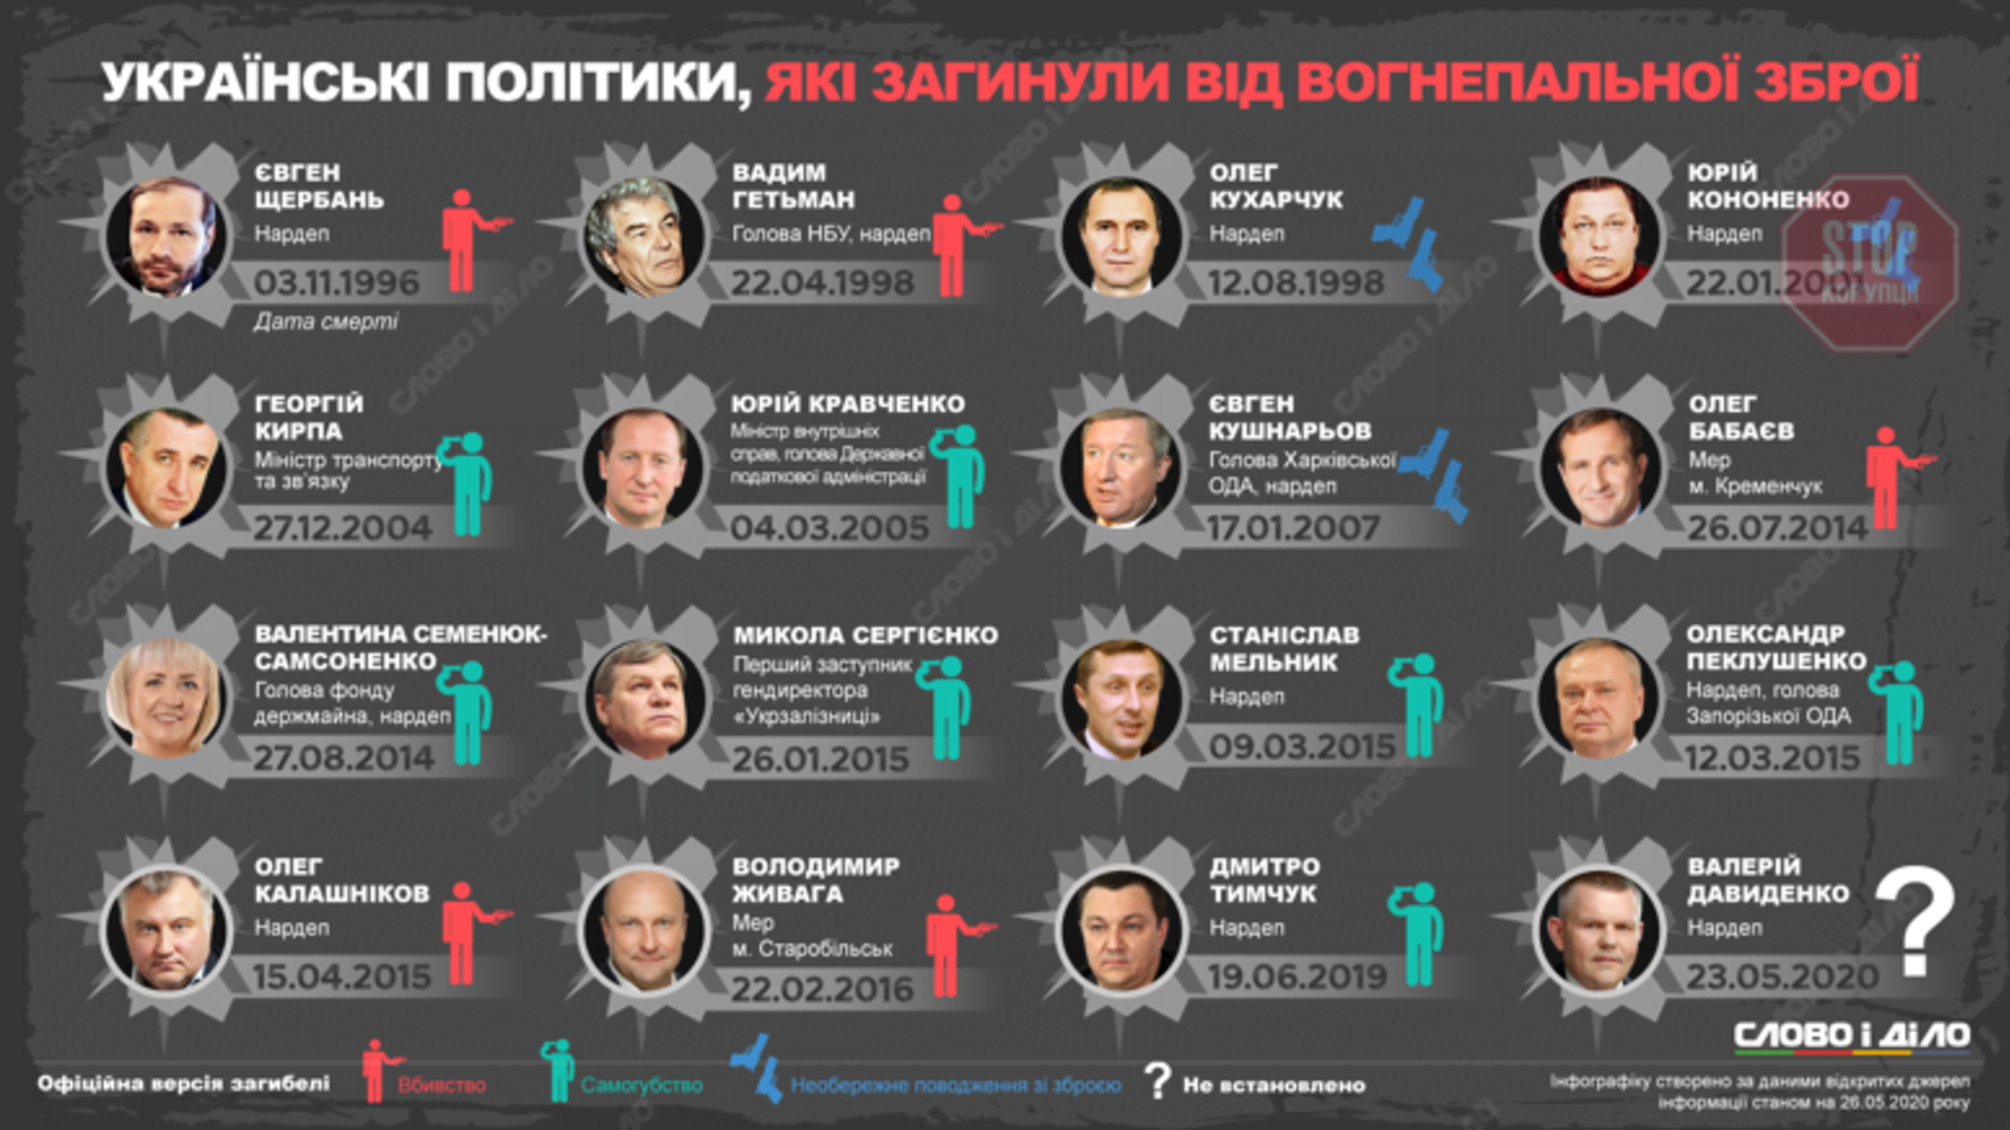 Какие украинские политики умерли от огнестрельного ранения (список)